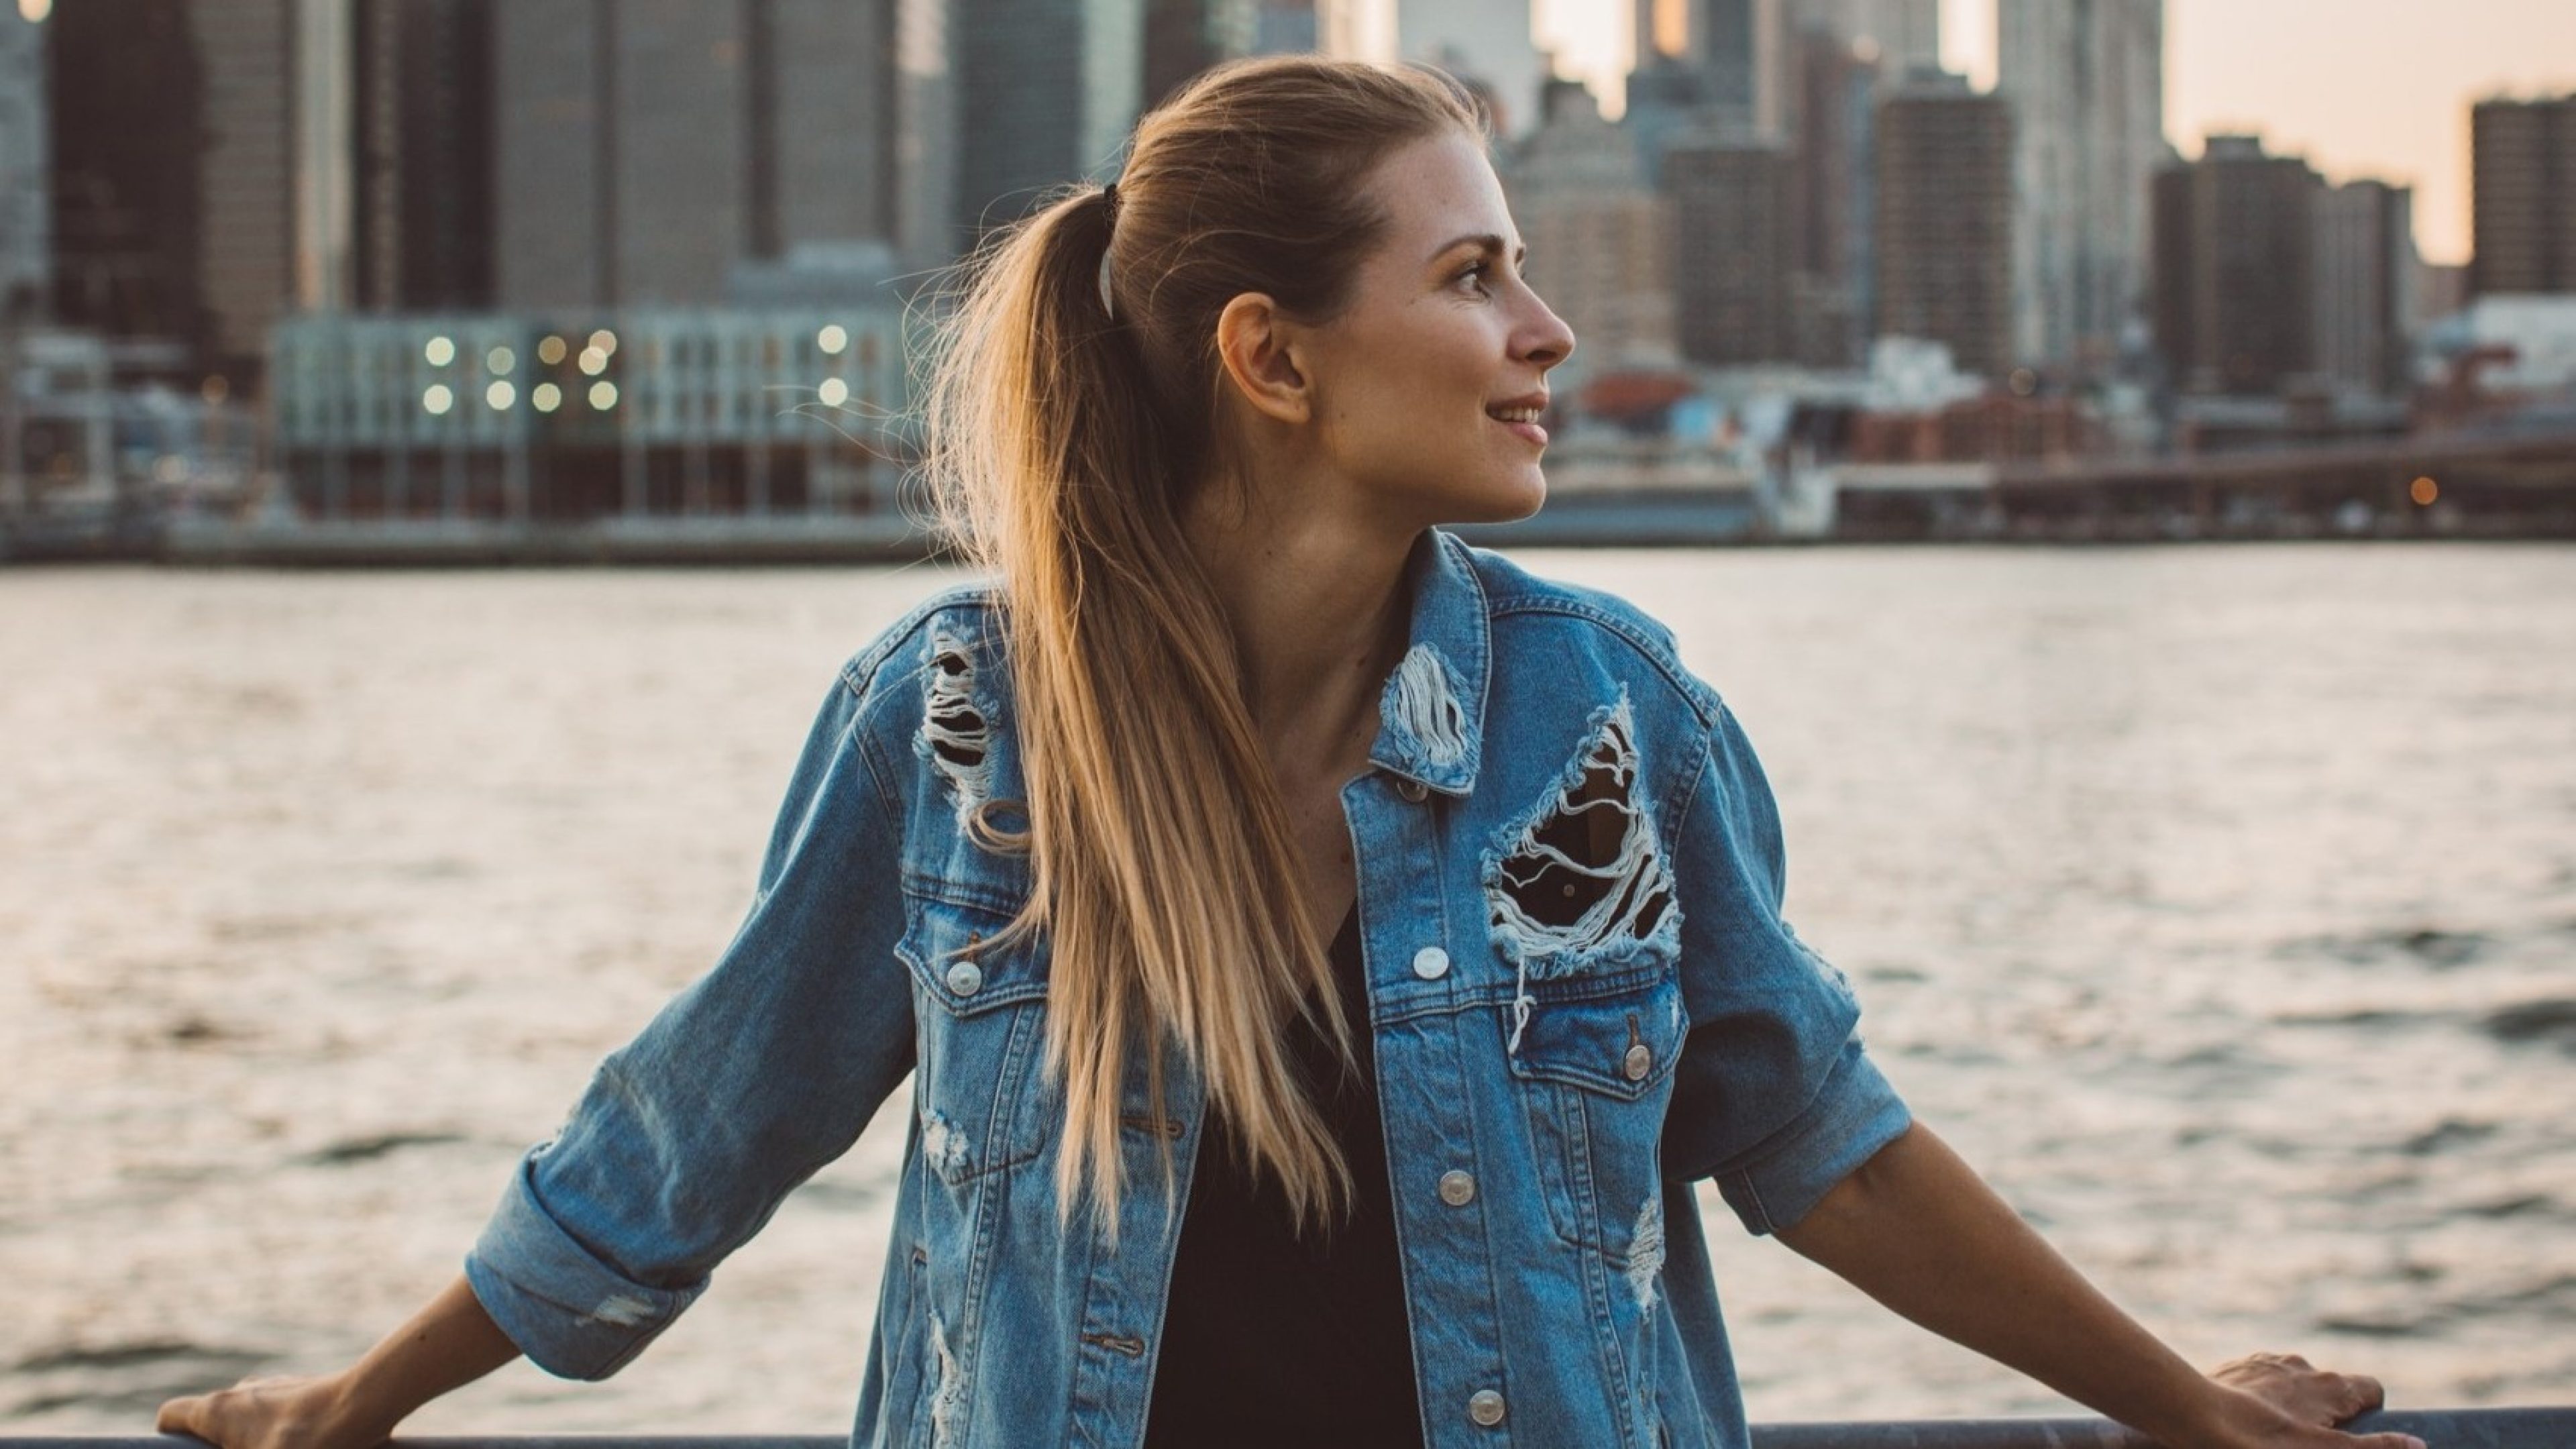 Une jeune femme aux longs cheveux blonds portant une veste en jean déchirée se tient debout en tenant une rampe au bord de l’eau, avec un paysage urbain en arrière-plan. Elle regarde de côté en souriant pendant que le soleil se couche.